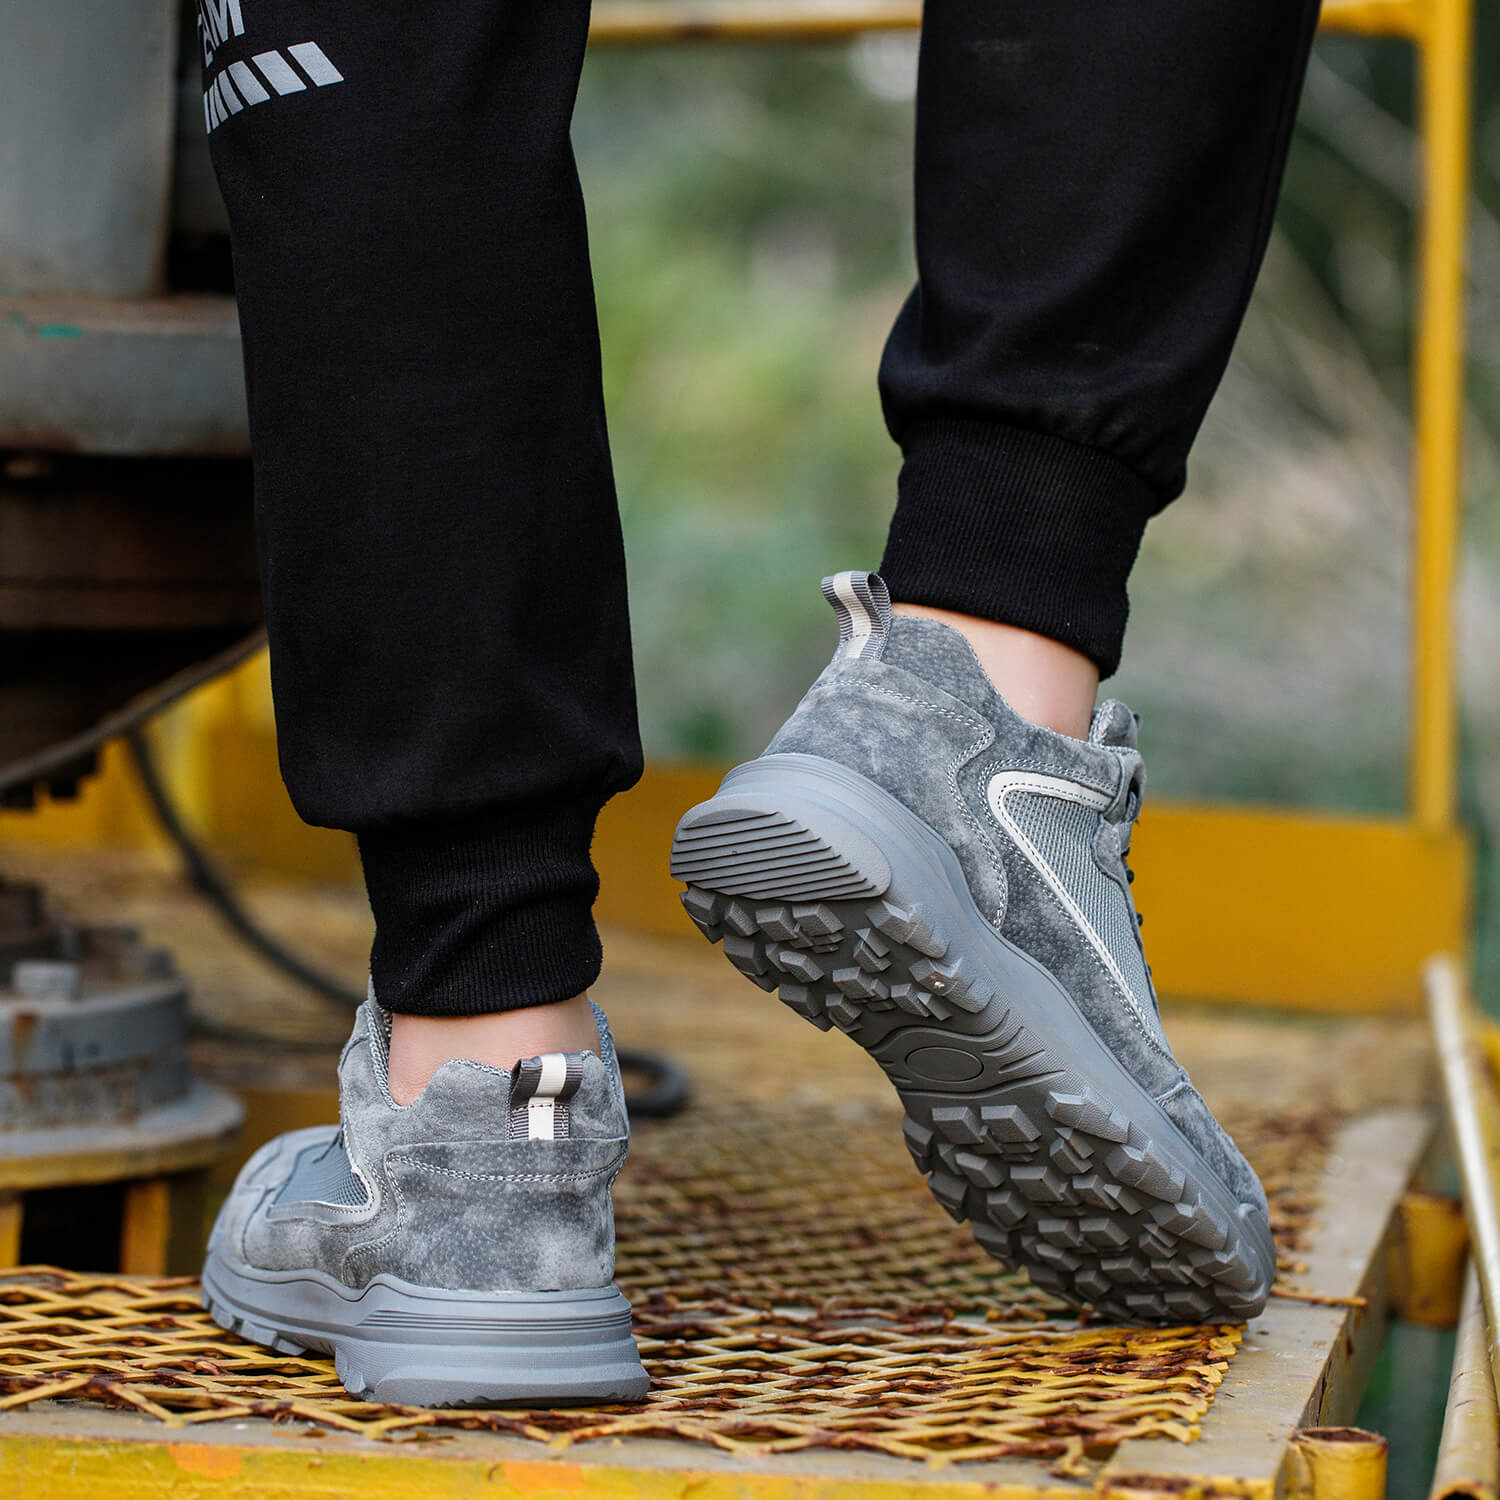 Composite Toe Walking Shoes Flash Sales | bellvalefarms.com